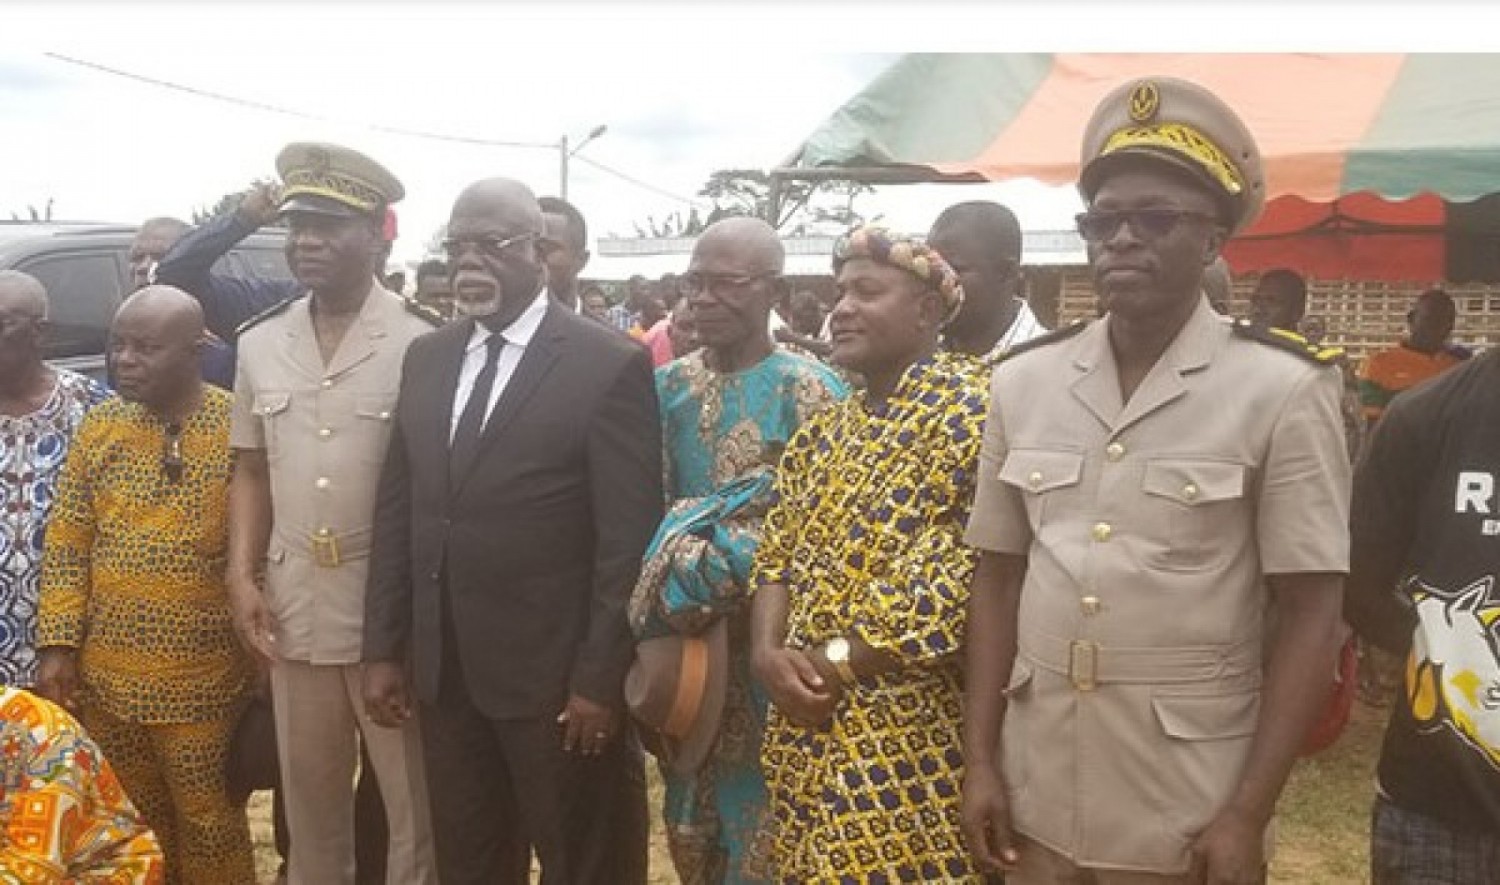 Côte d'Ivoire : Le Ministre-Gouverneur Philippe Légré s'oppose à la destitution de son chef de village accusé d'avoir bradé le village à des opérateurs économiques